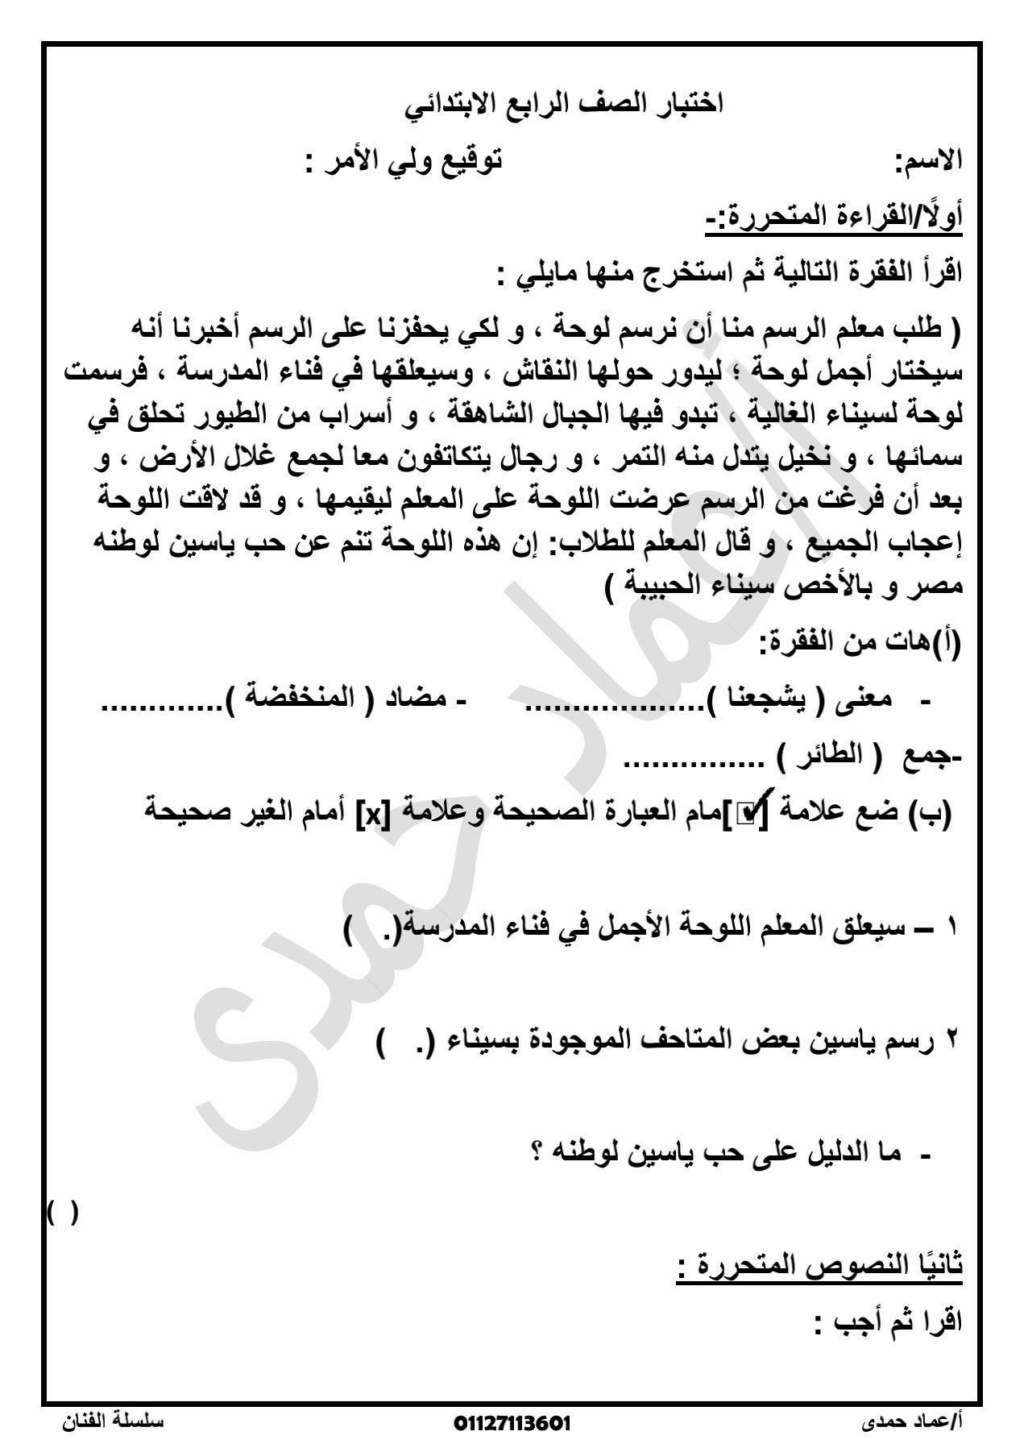 امتحان لغة عربية للصف الرابع الابتدائي علي مقرر شهر أكتوبر  أ. عماد حمدي 6010